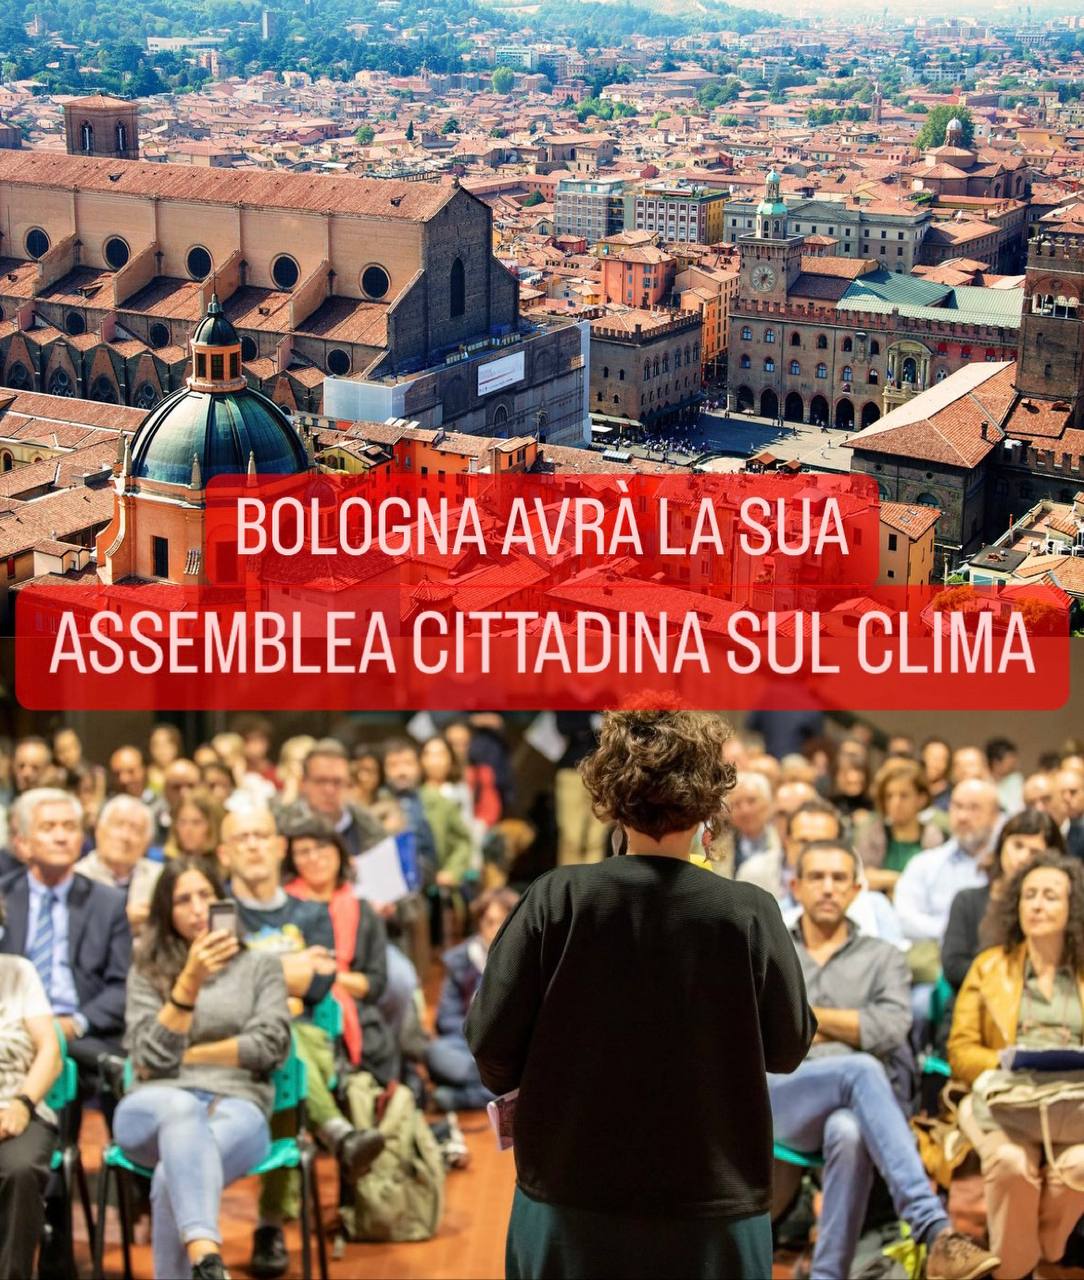 Approvata ieri in Consiglio Comunale la modifica al regolamento: a Bologna ci saranno le Assemblee Cittadine!